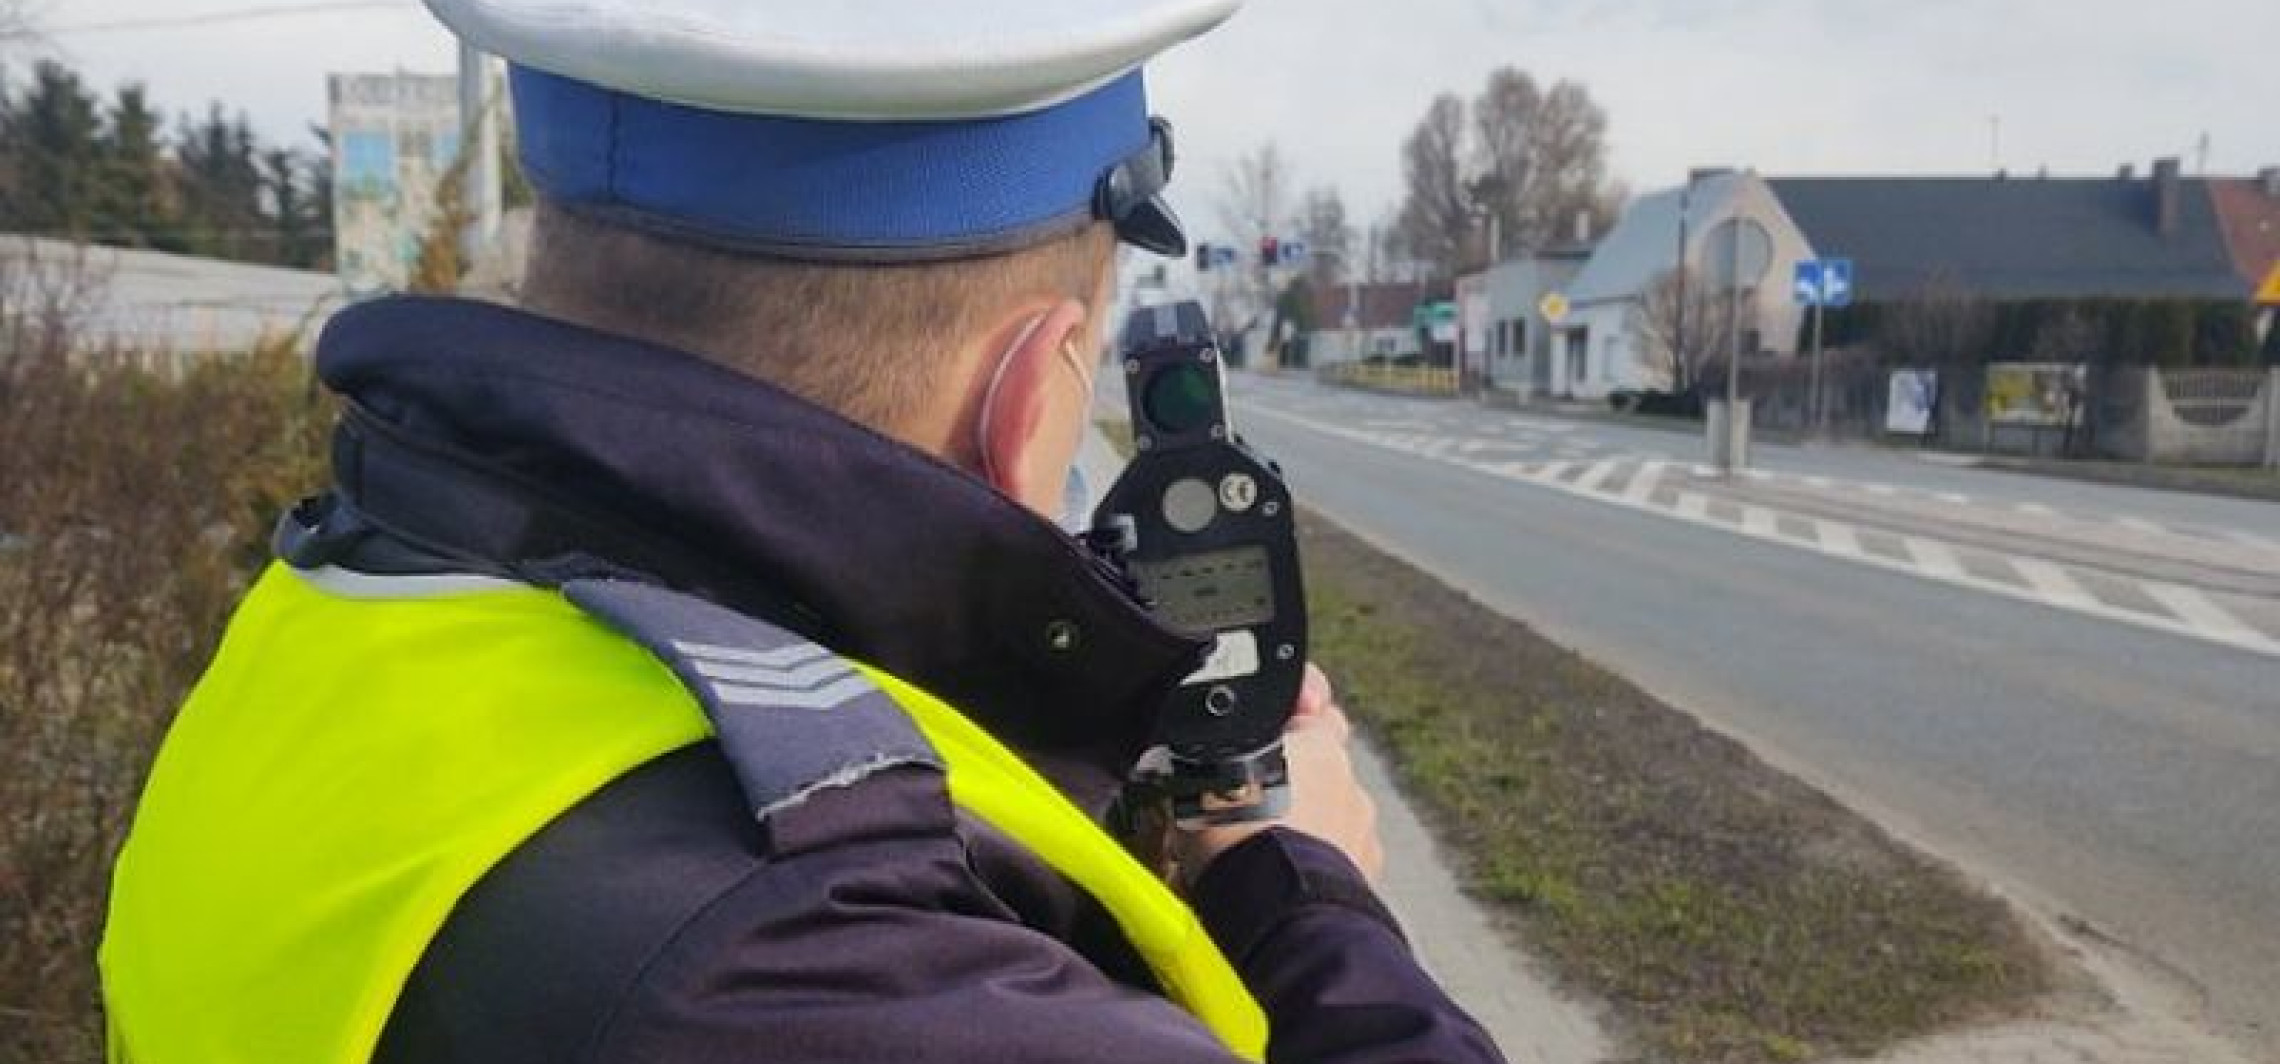 Inowrocław - Policja bierze pod lupę piratów drogowych